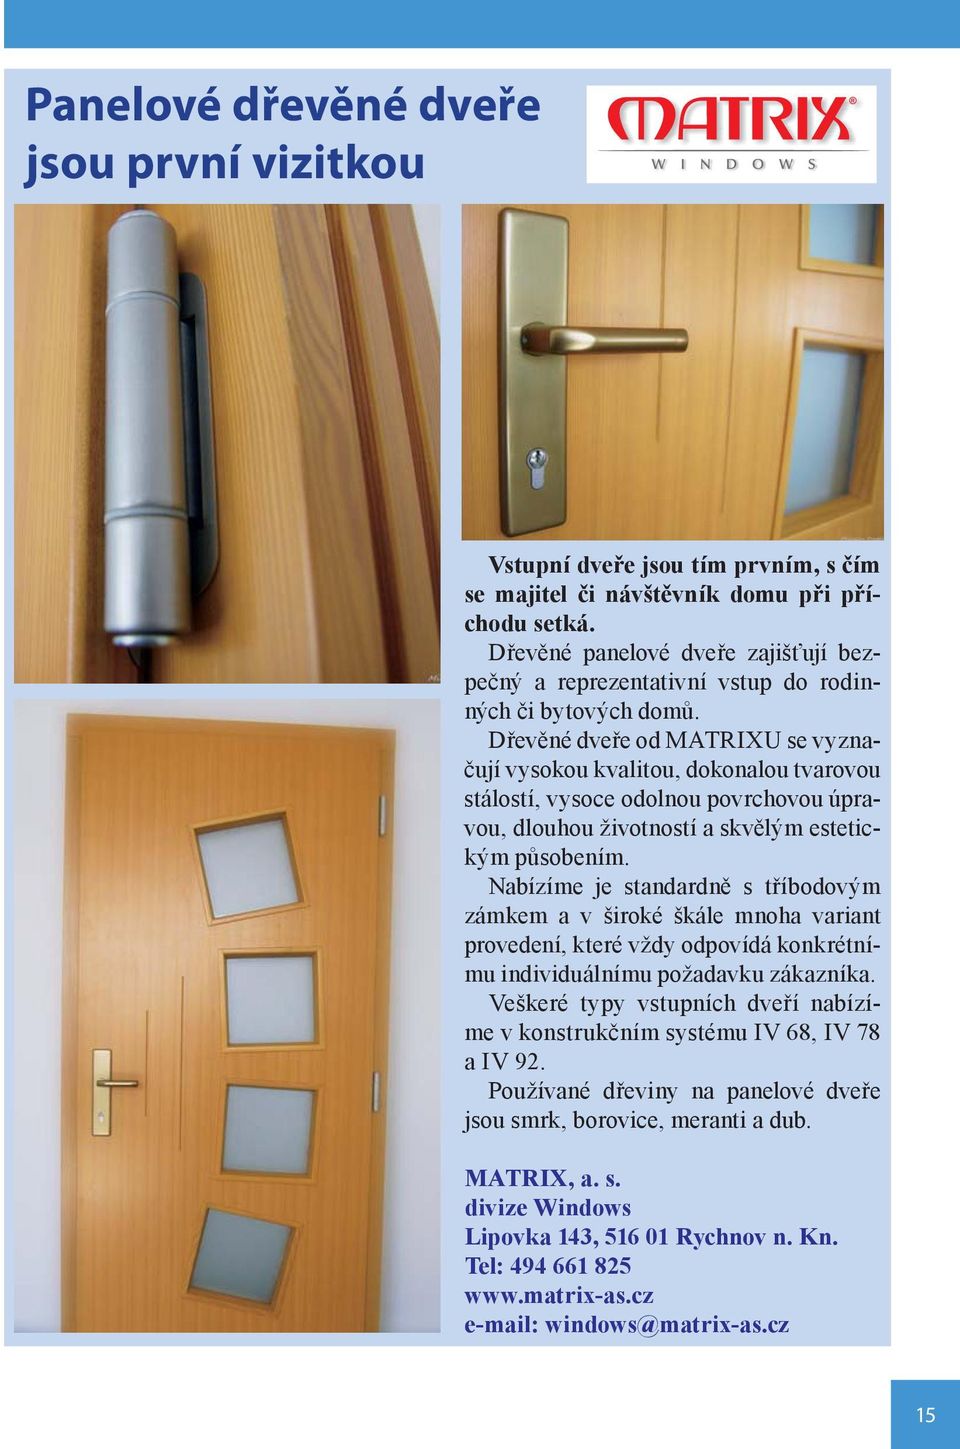 Dřevěné dveře od MATRIXU se vyznačují vysokou kvalitou, dokonalou tvarovou stálostí, vysoce odolnou povrchovou úpravou, dlouhou životností a skvělým estetickým působením.